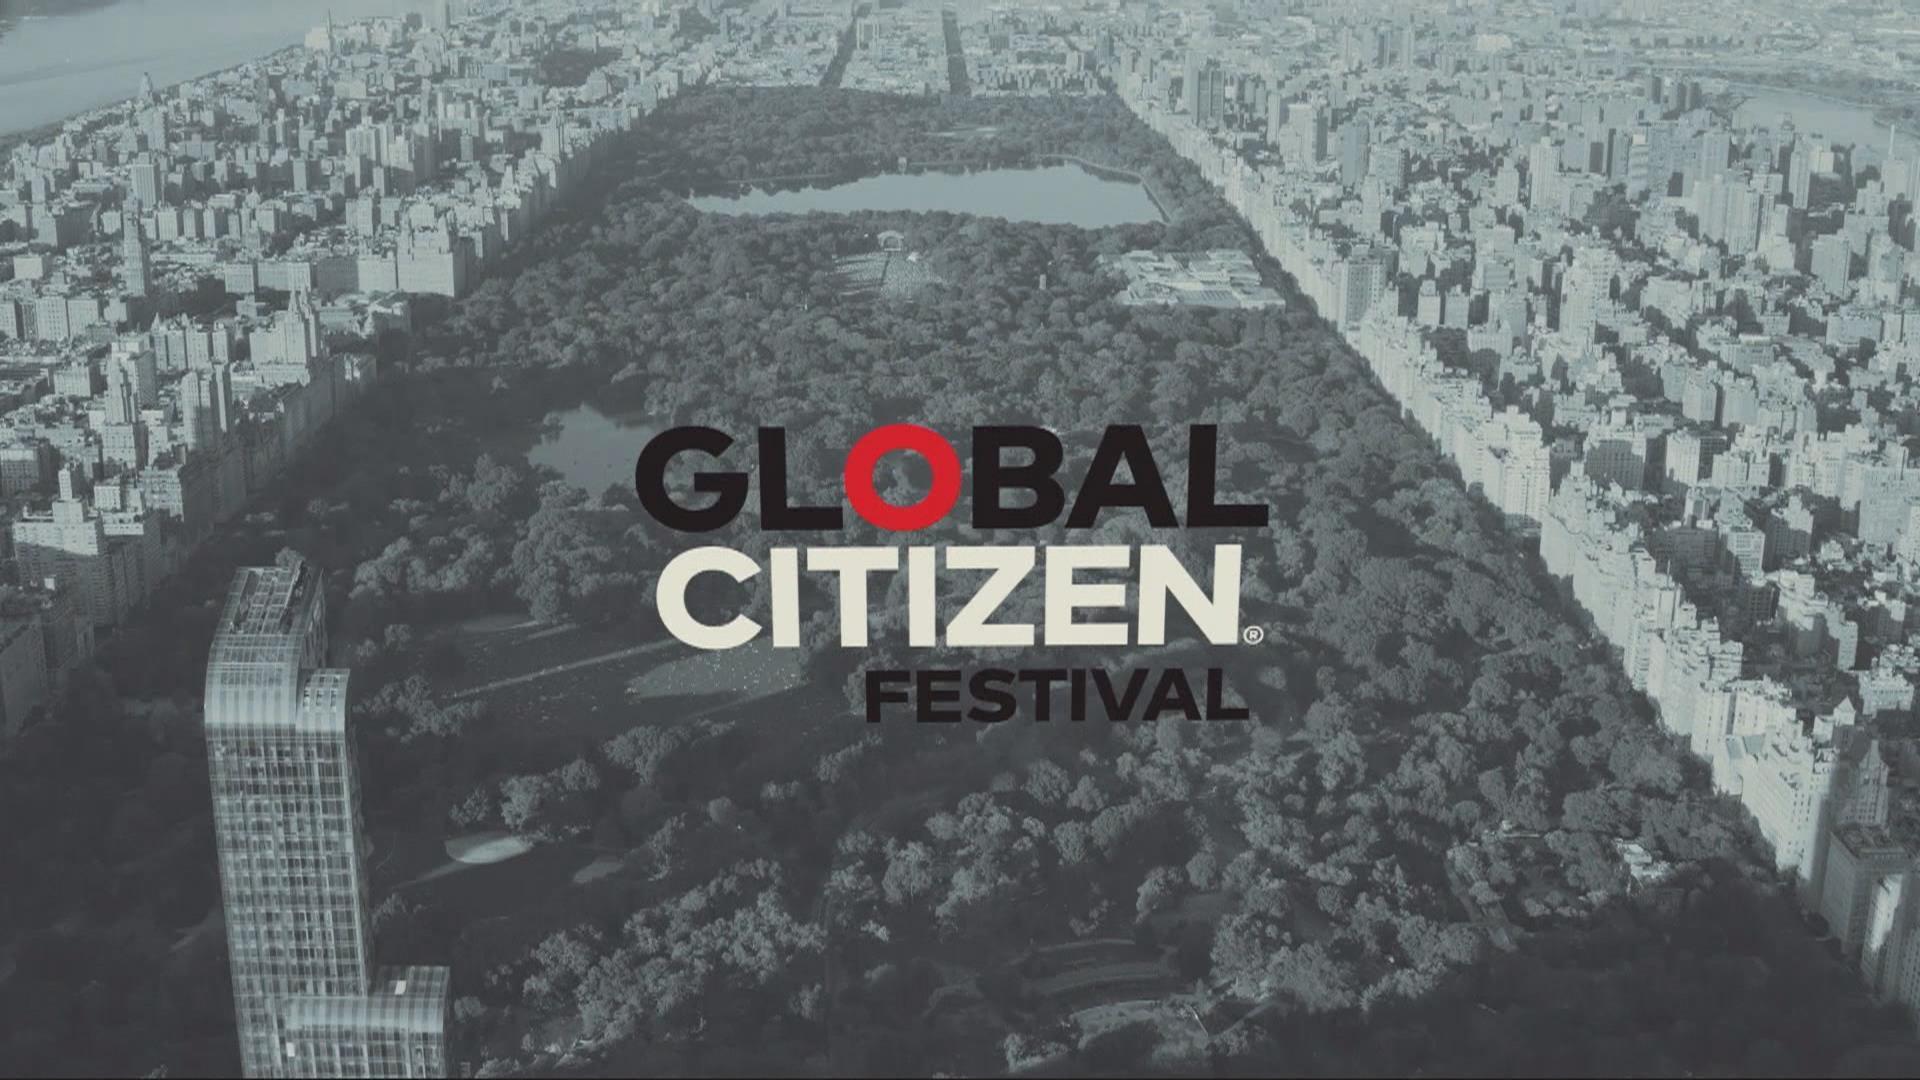 Stevie Wonder, Pharrell Williams will headline Global Citizen